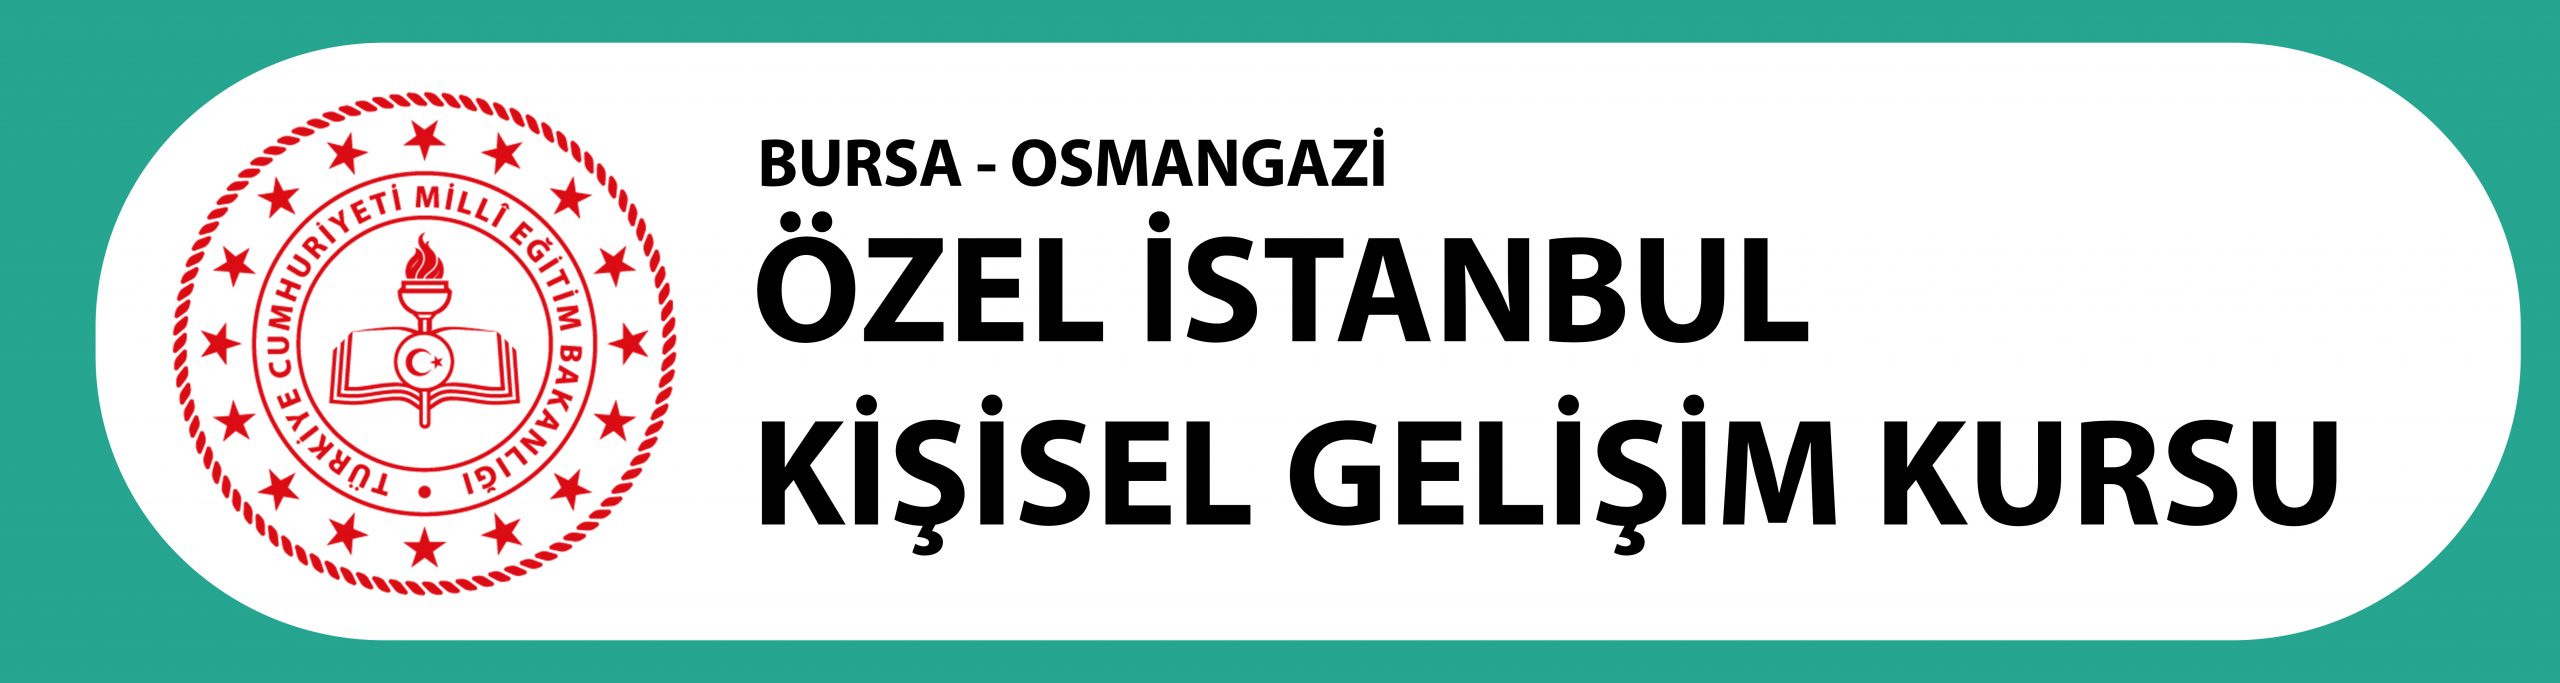 Bursa İstanbul Dershanesi - Bursa İstanbul Kurs Merkezi - Bursa Dershane